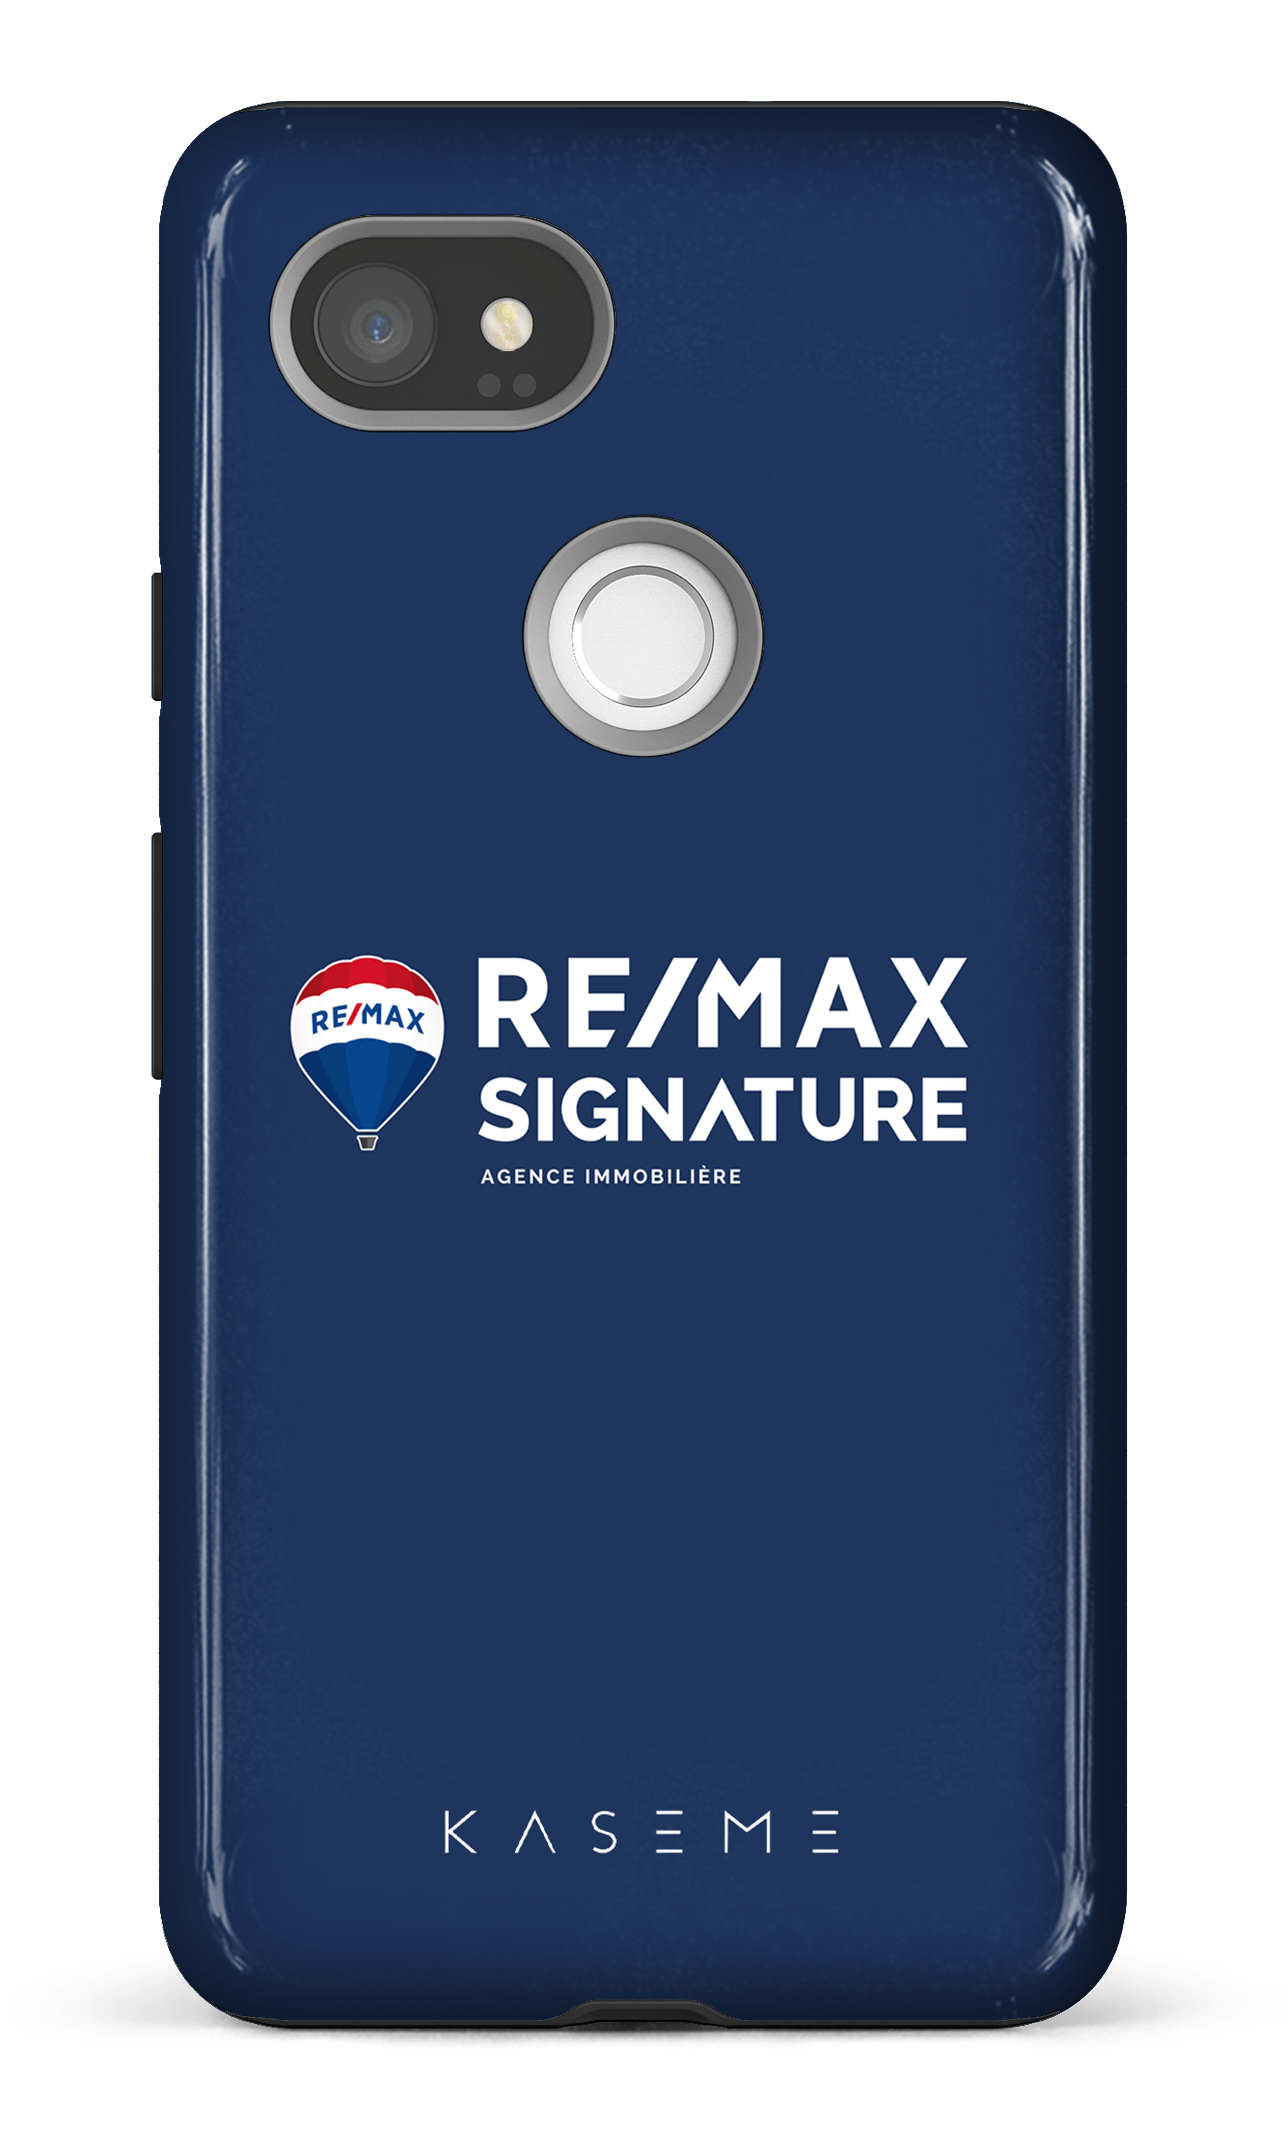 Remax Signature Bleu - Google Pixel 2 XL